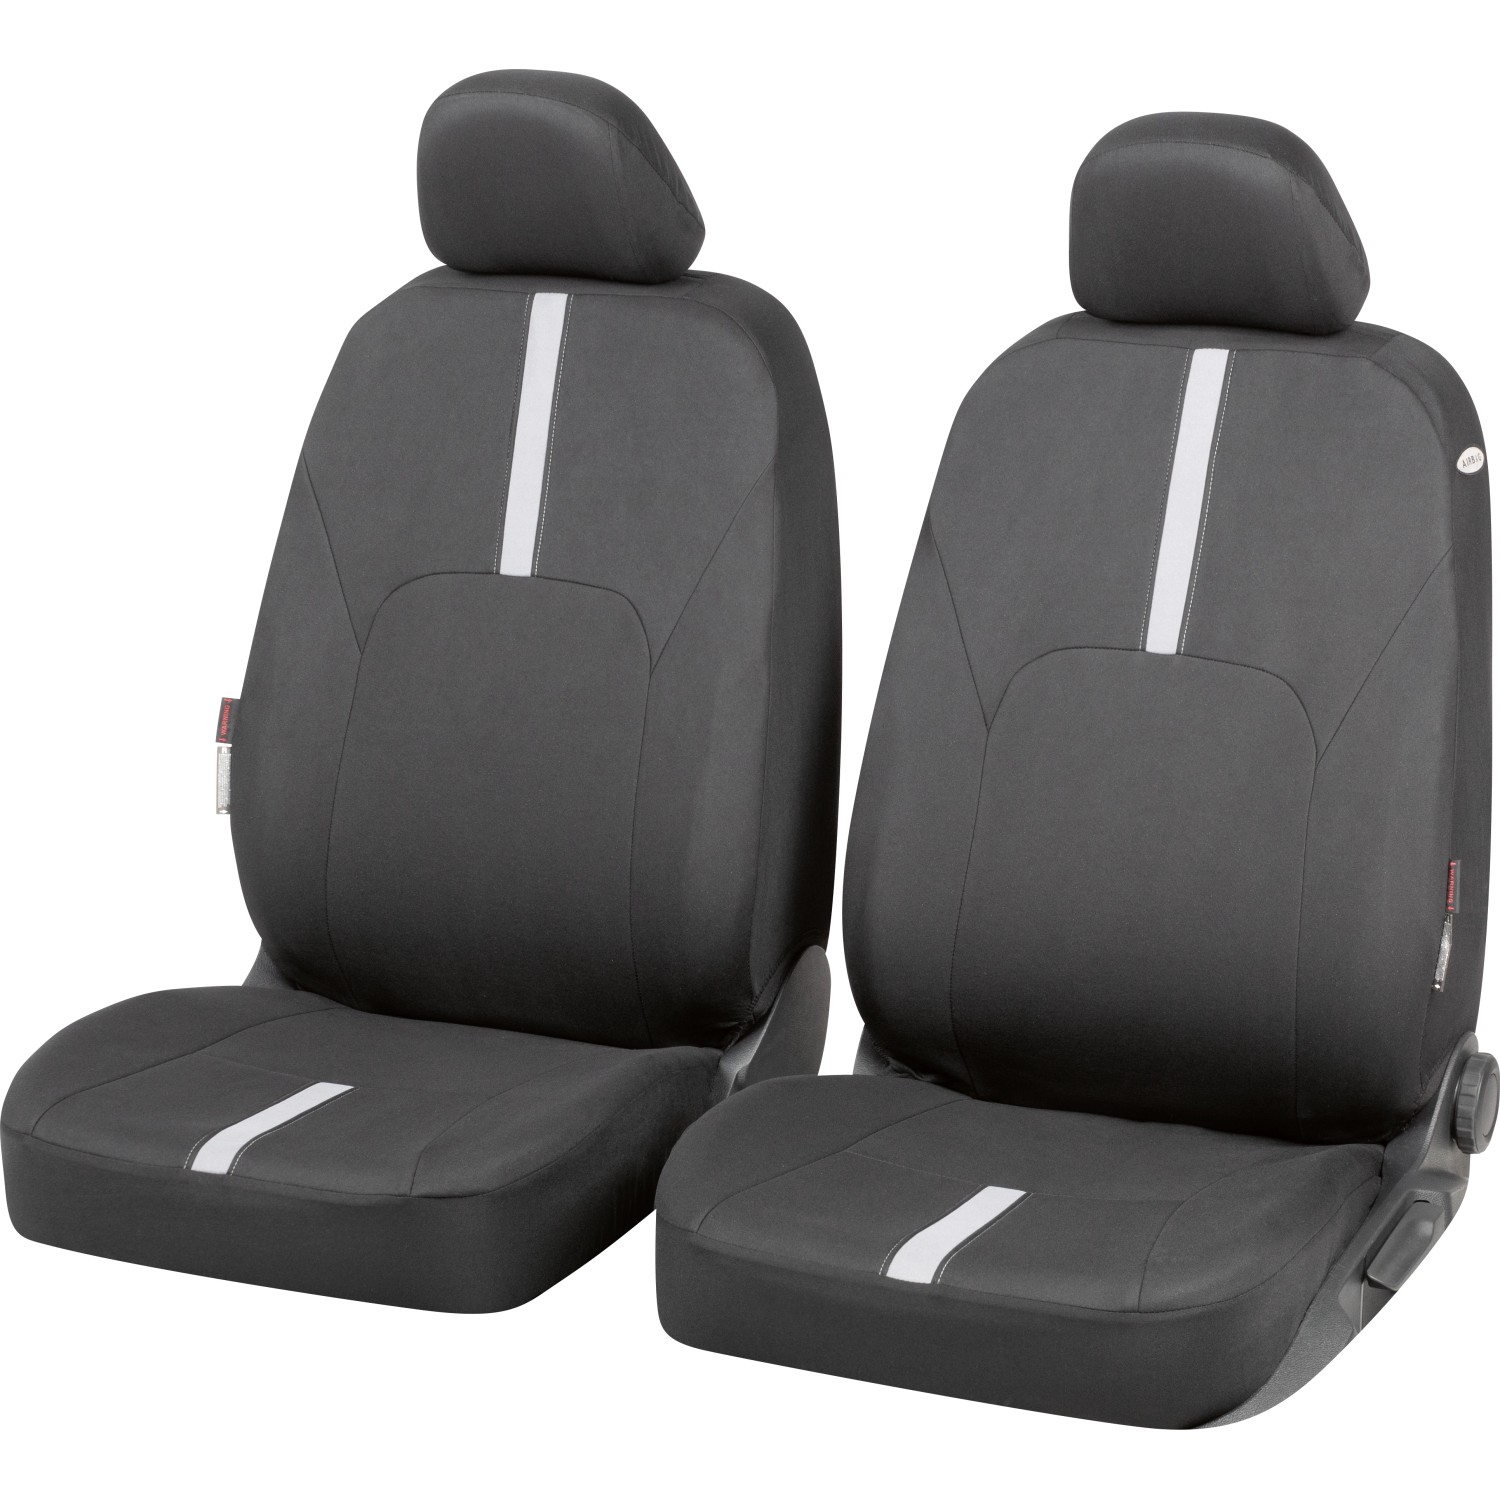 Sitzbezug Sitzbezüge Schonbezüge für Audi A4 Blau Vorne Satz 1+1 Schwa